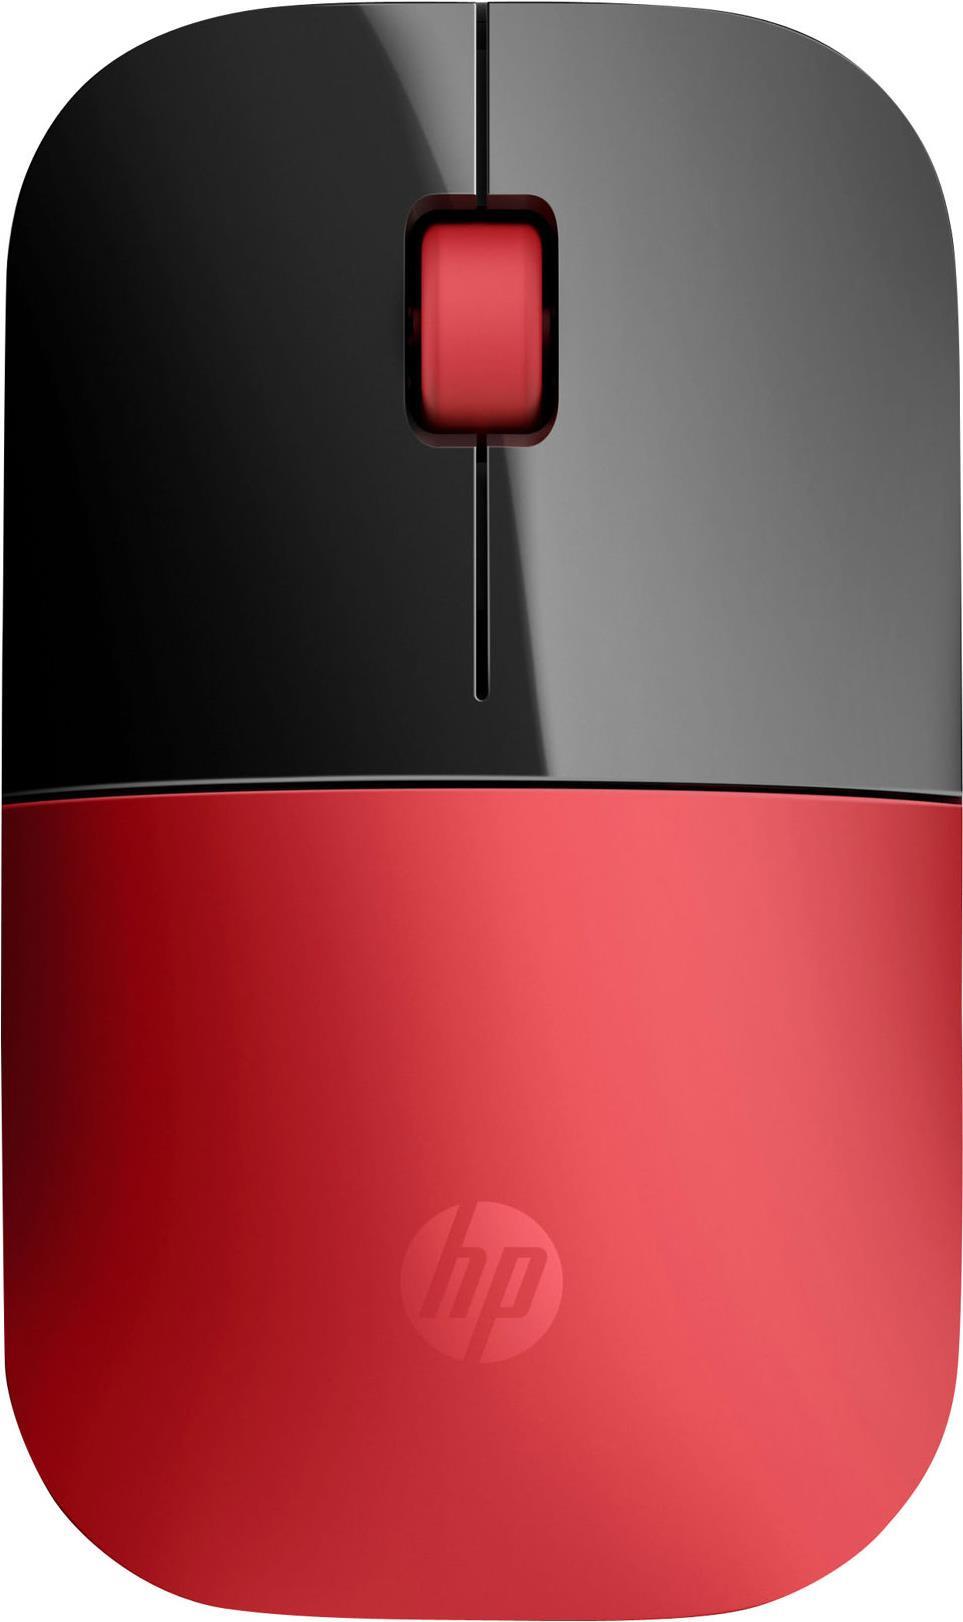 HP Z3700 Wireless Mouse (V0L82AA)